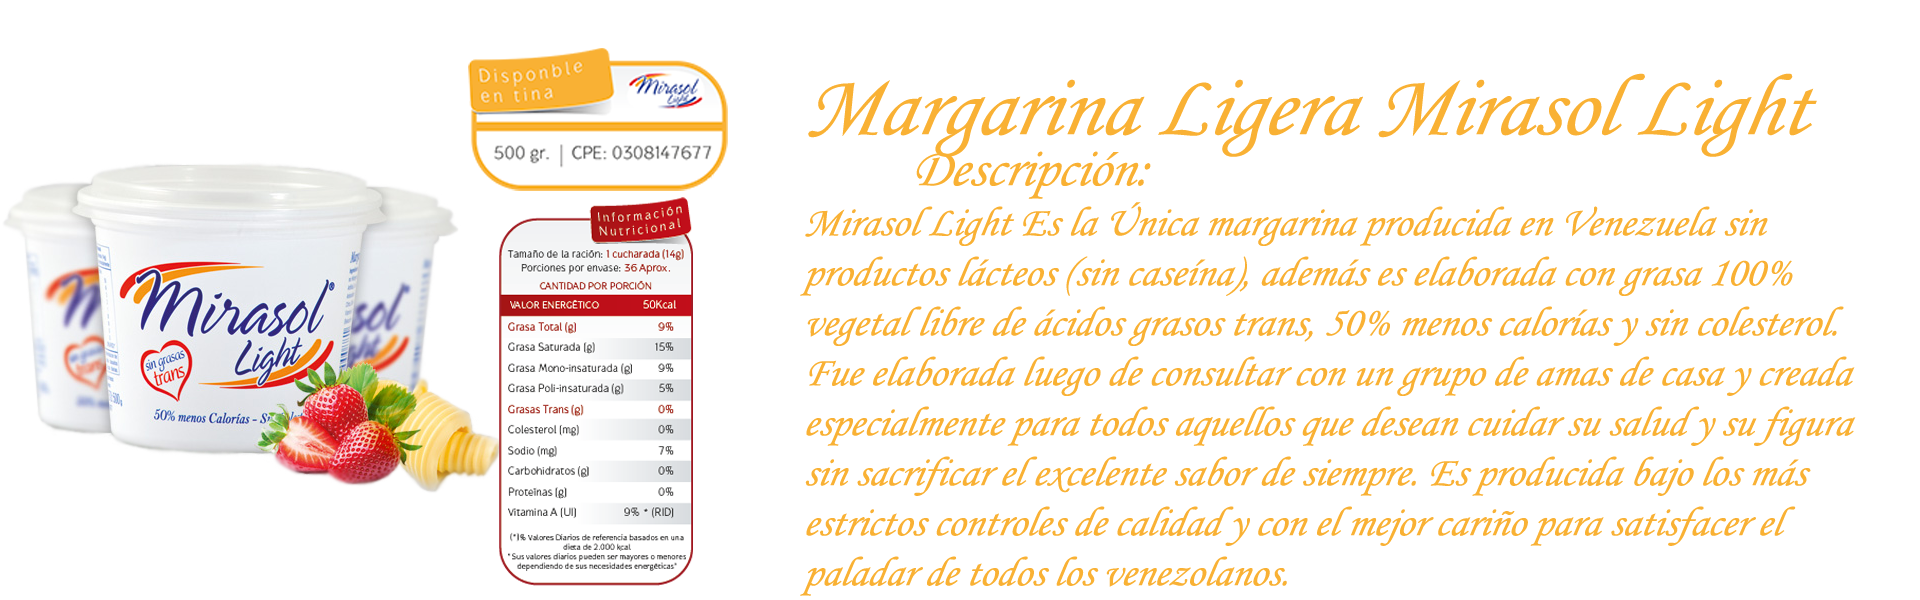 Margarina Ligera Mirasol Light